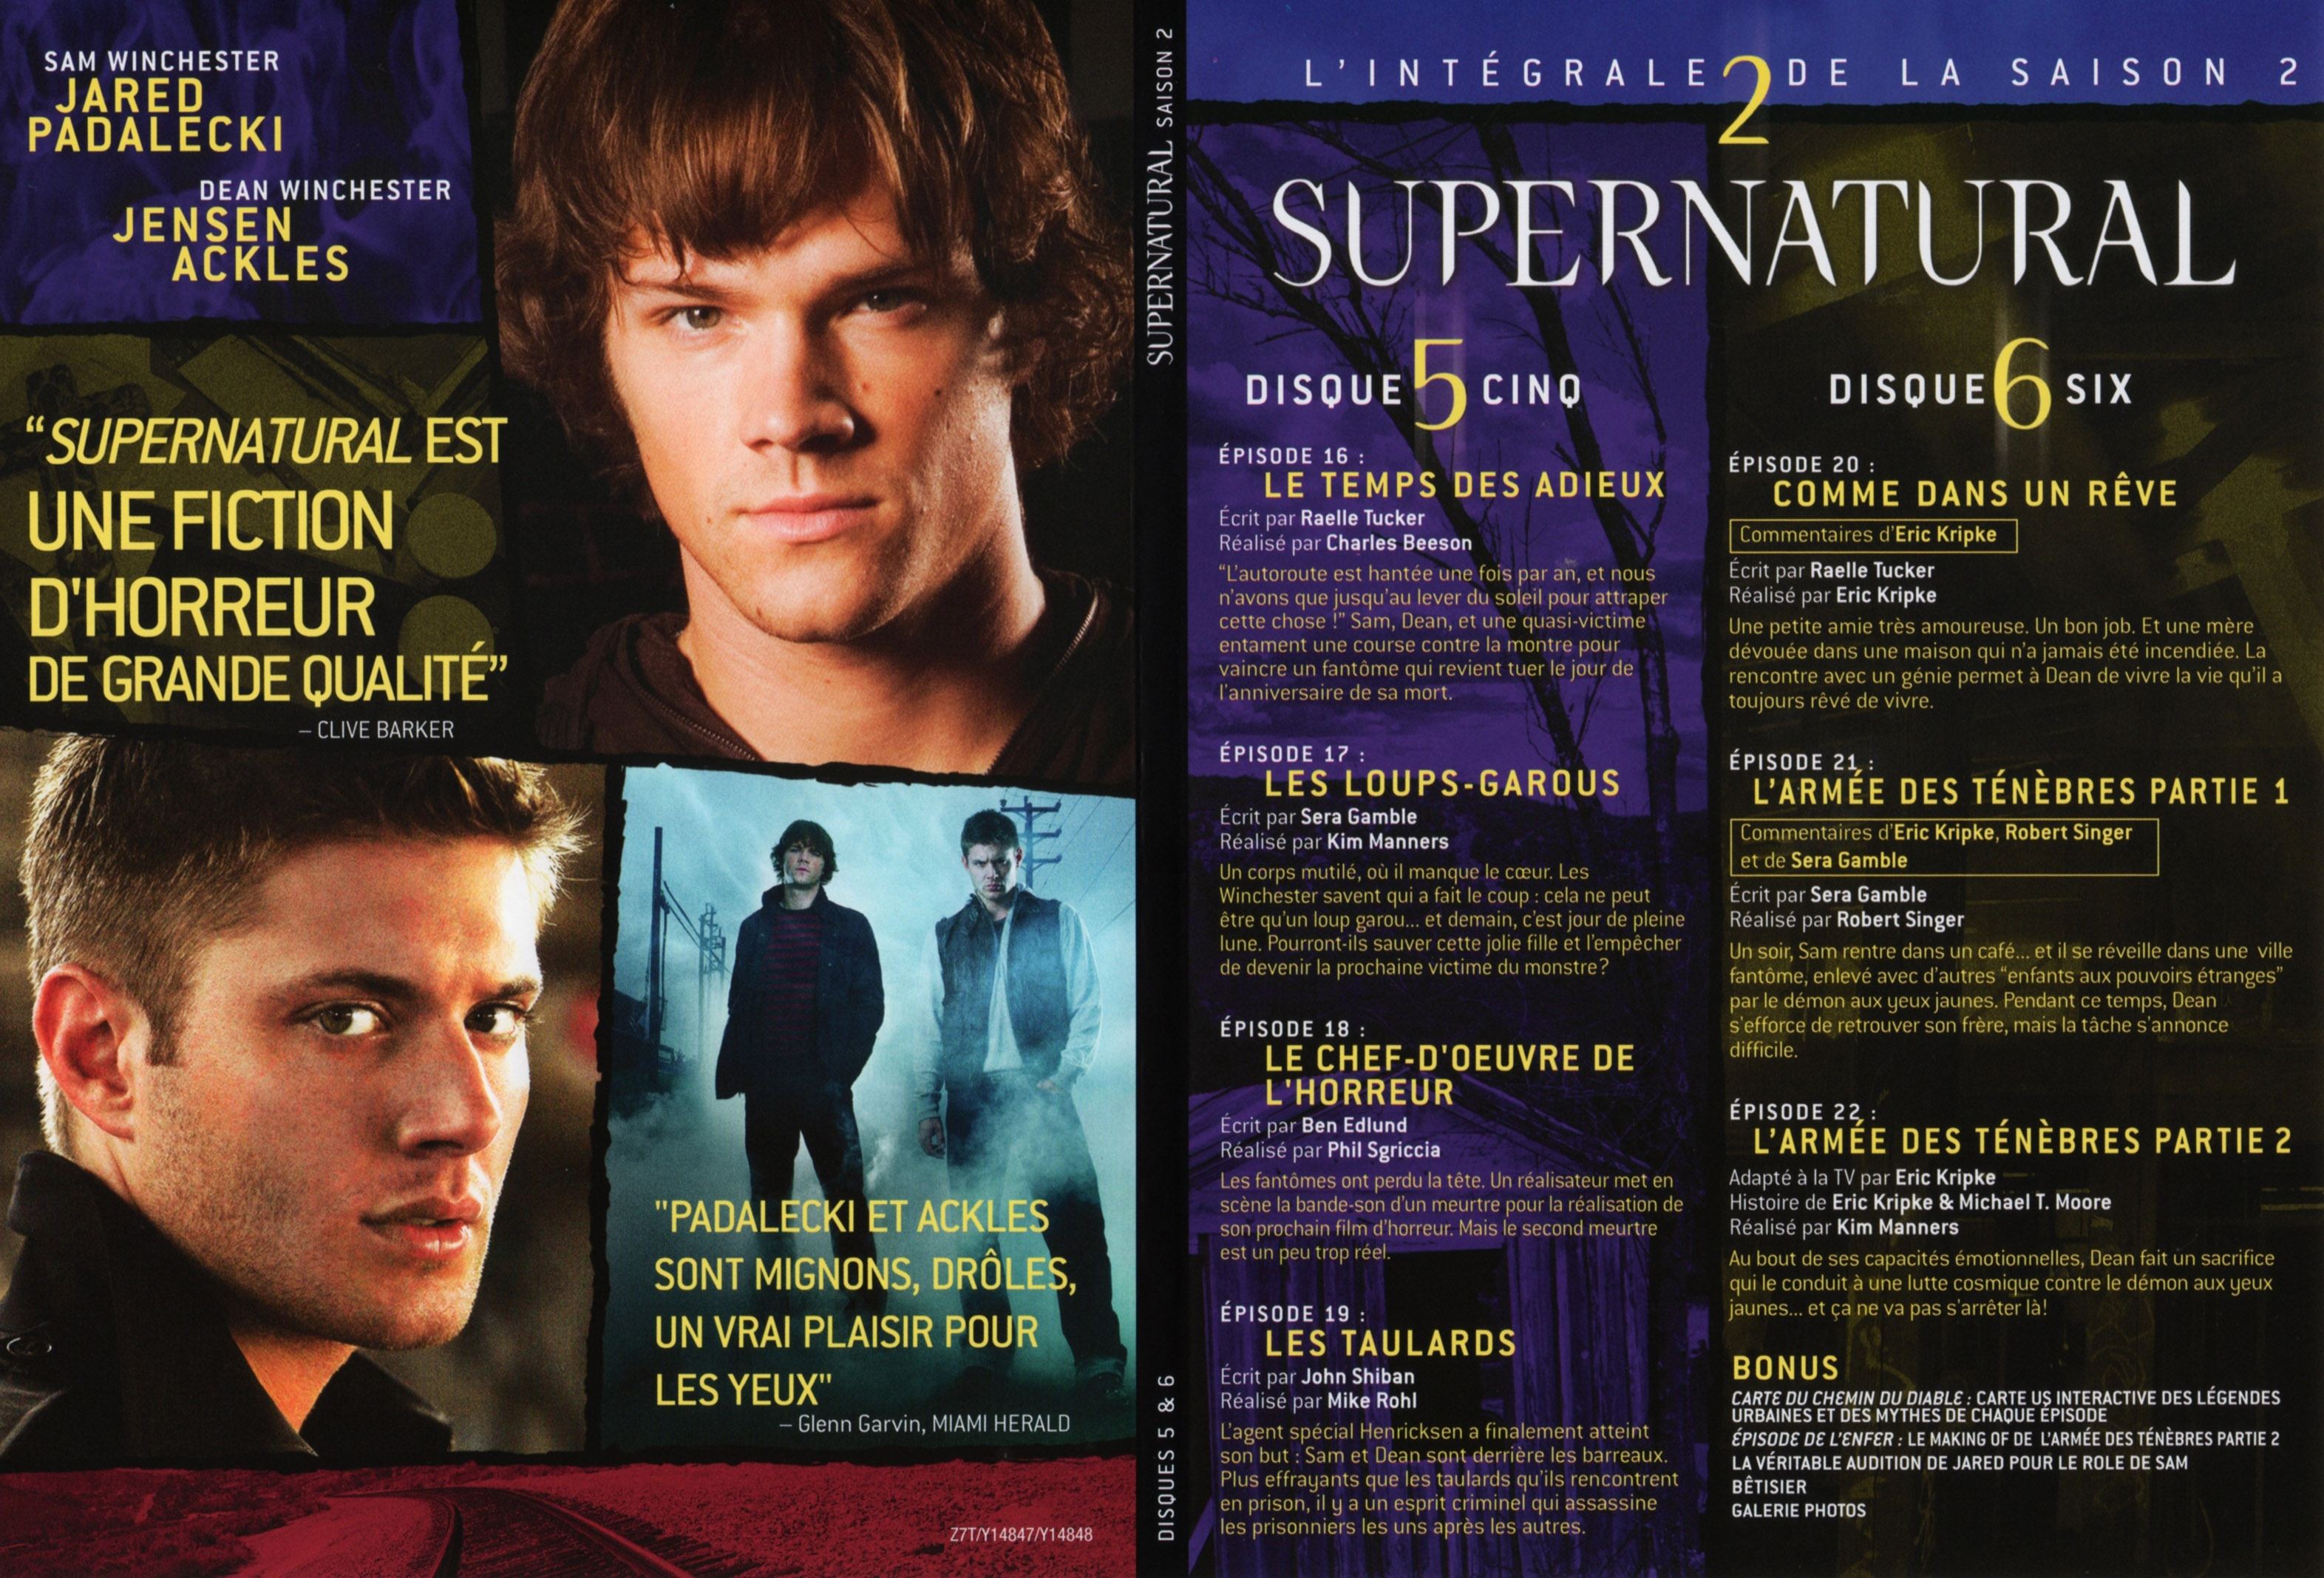 Jaquette DVD Supernatural Saison 2 DVD 3